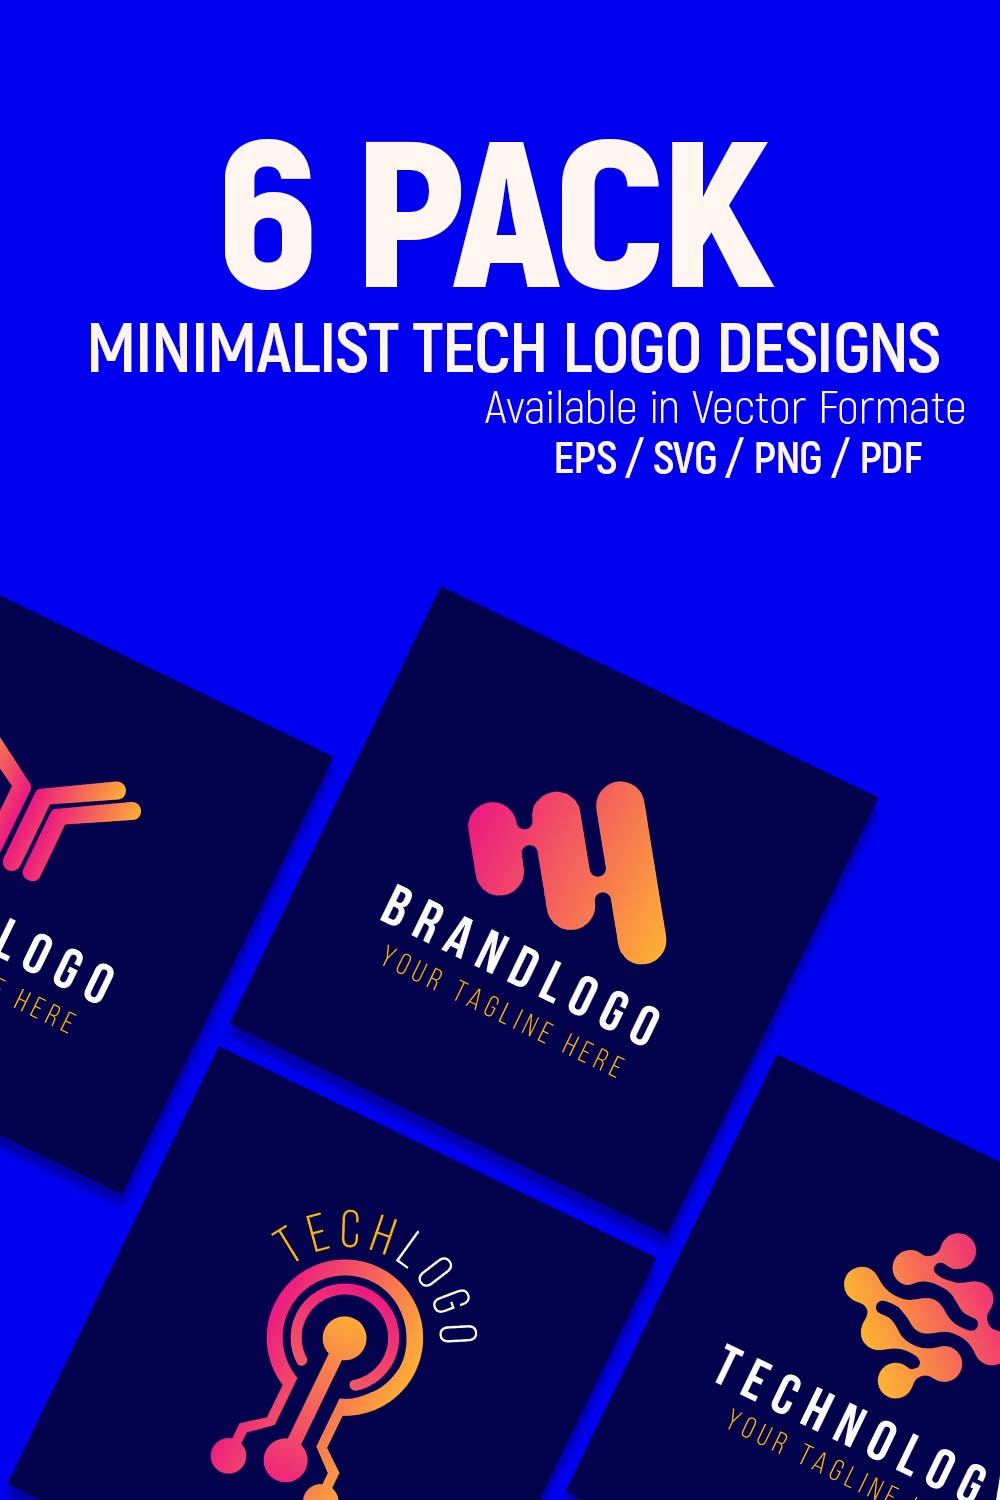 Minimalist Tech Logo Design Bundle pinterest preview image.